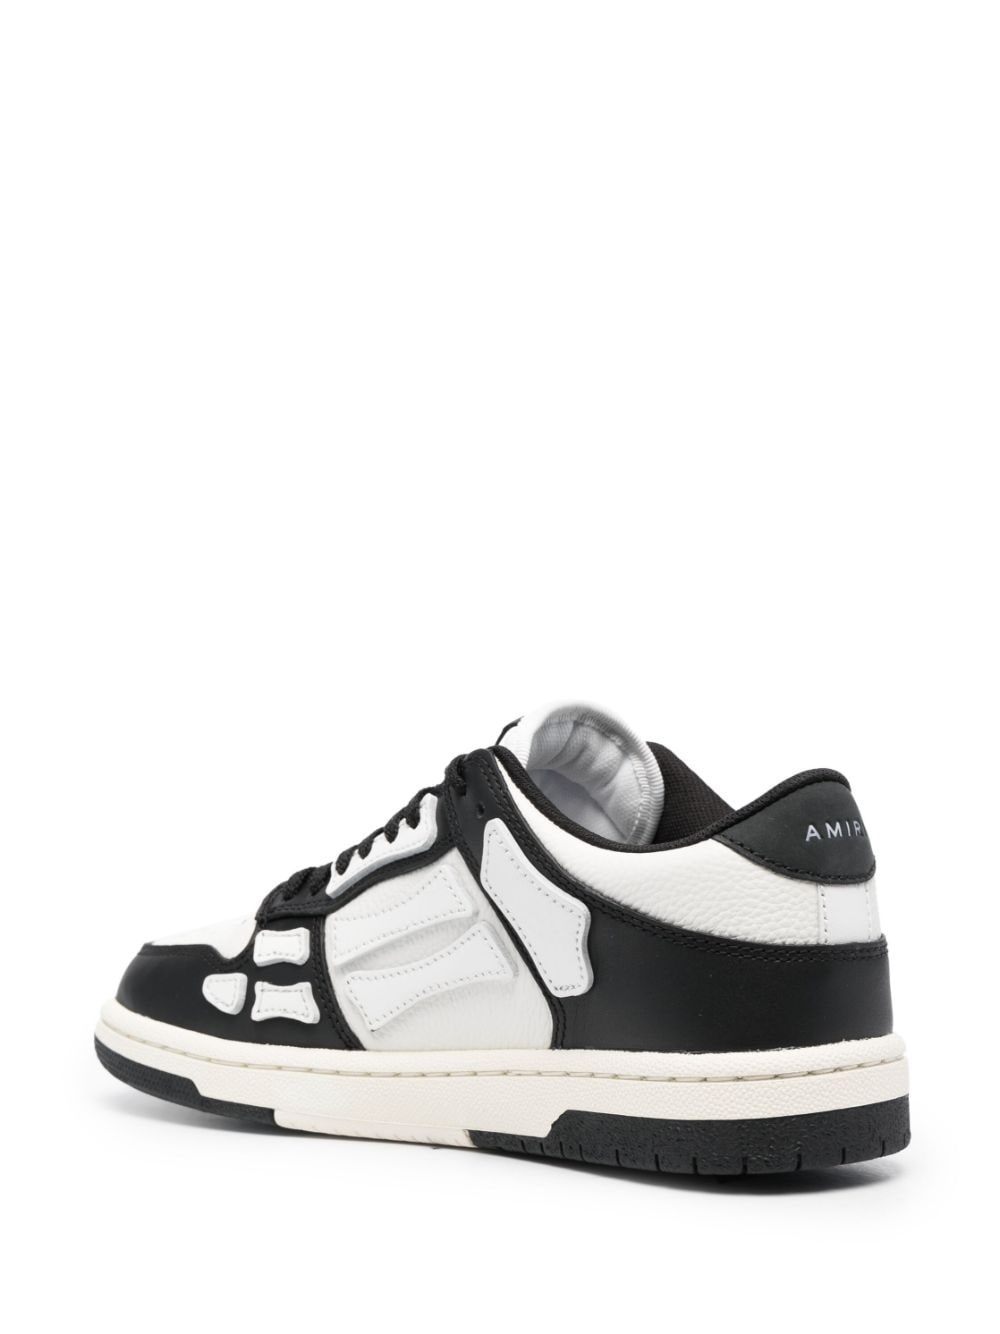 Skel Top Low Black / White Low Top Sneakers